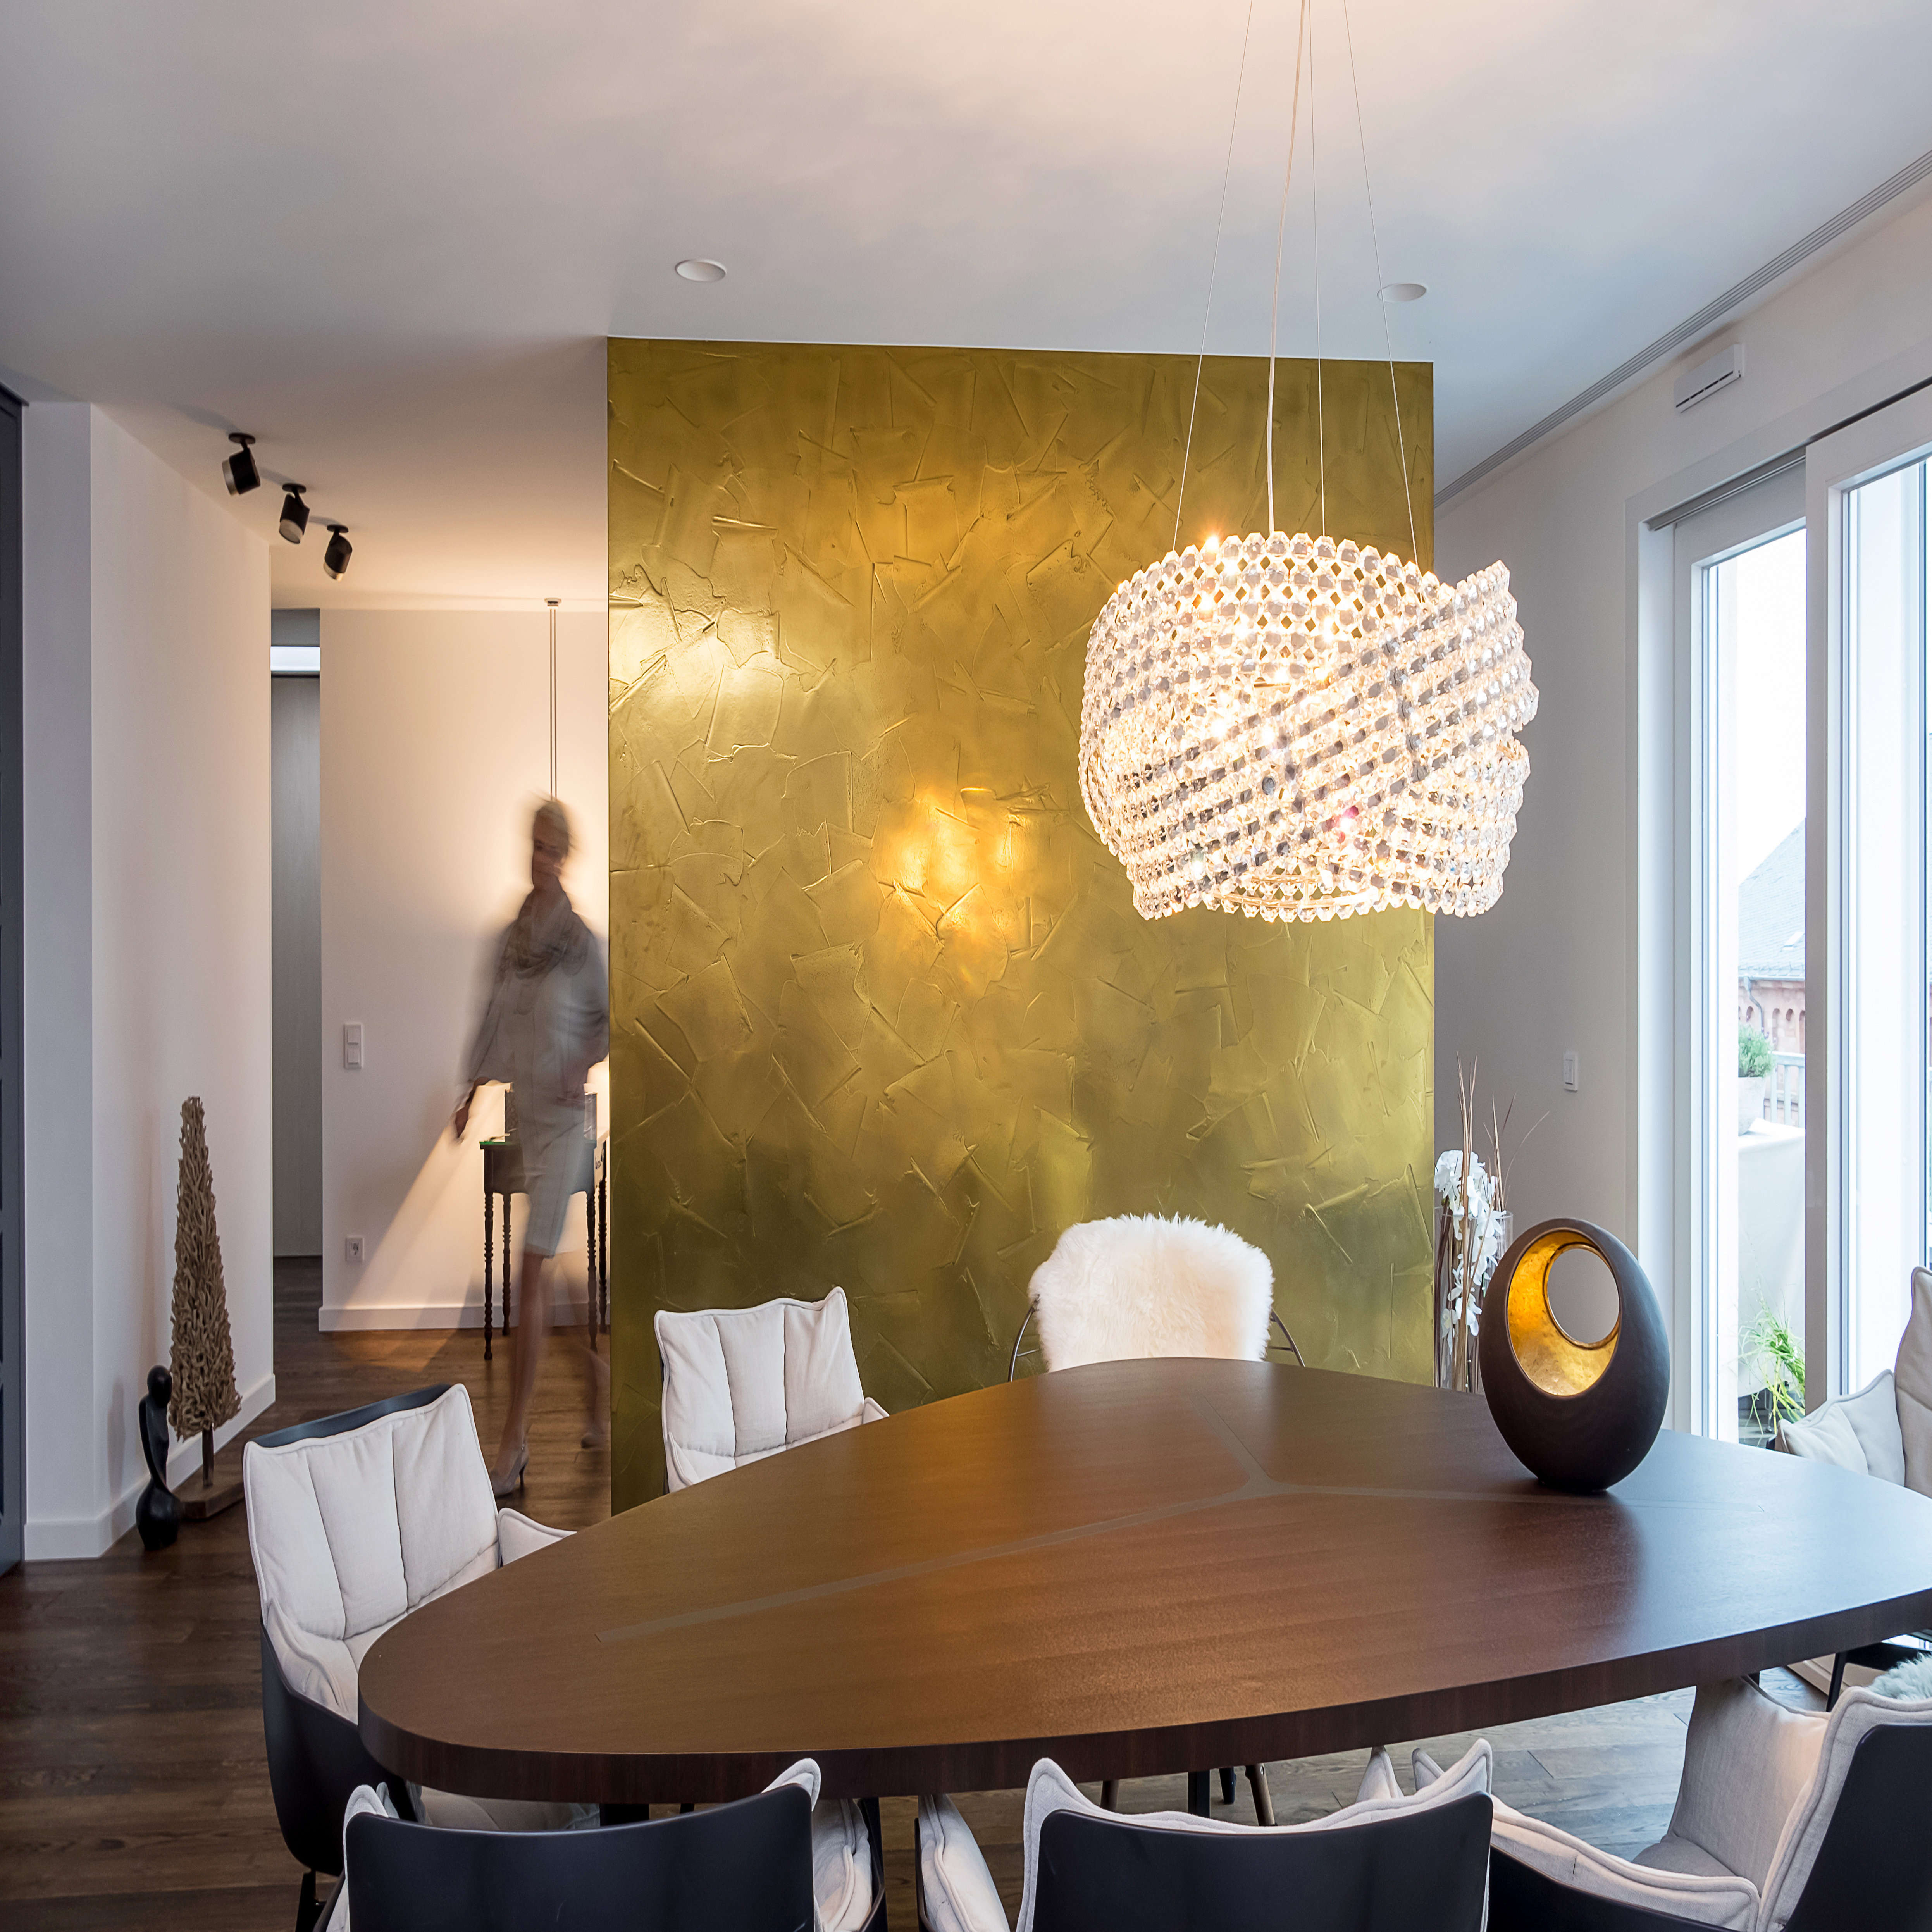 Raum mit modernem, geometrischen Wandgemälde von zwei Gesichtern in bunten Farben, dunkler Holzboden, Geländer im Vordergrund und Deckenleuchten.